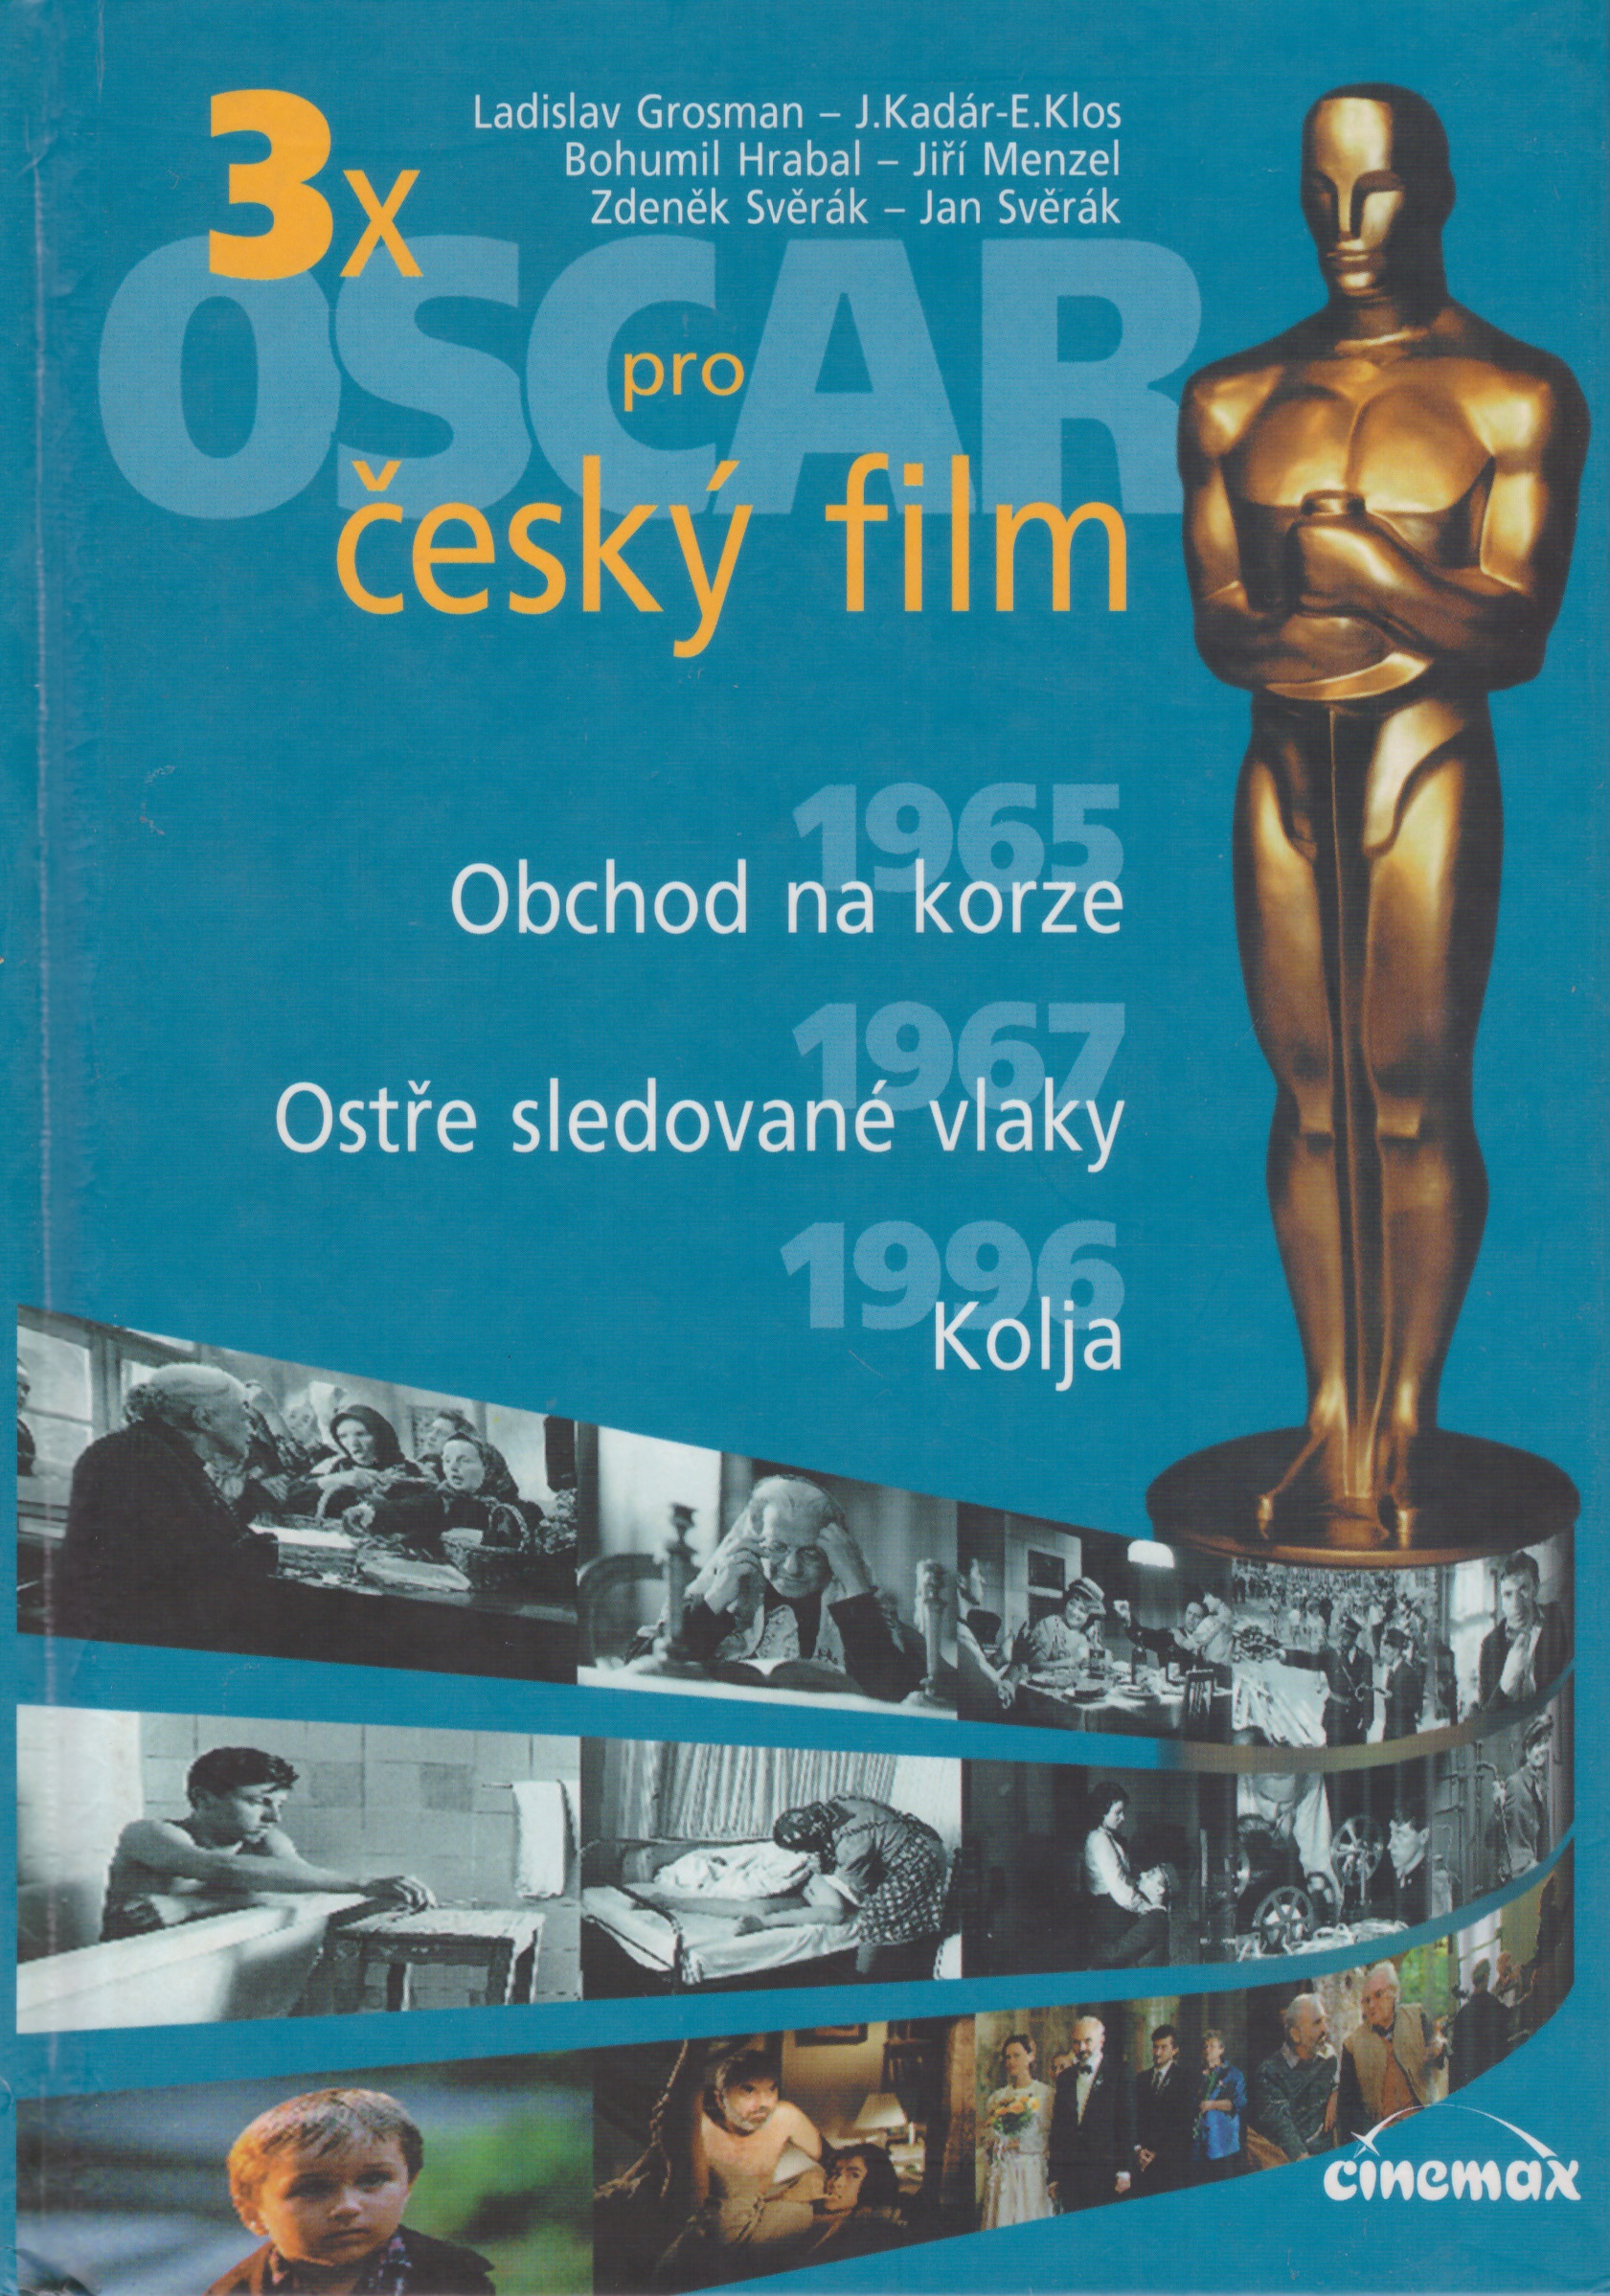 3 x Oscar pro český film